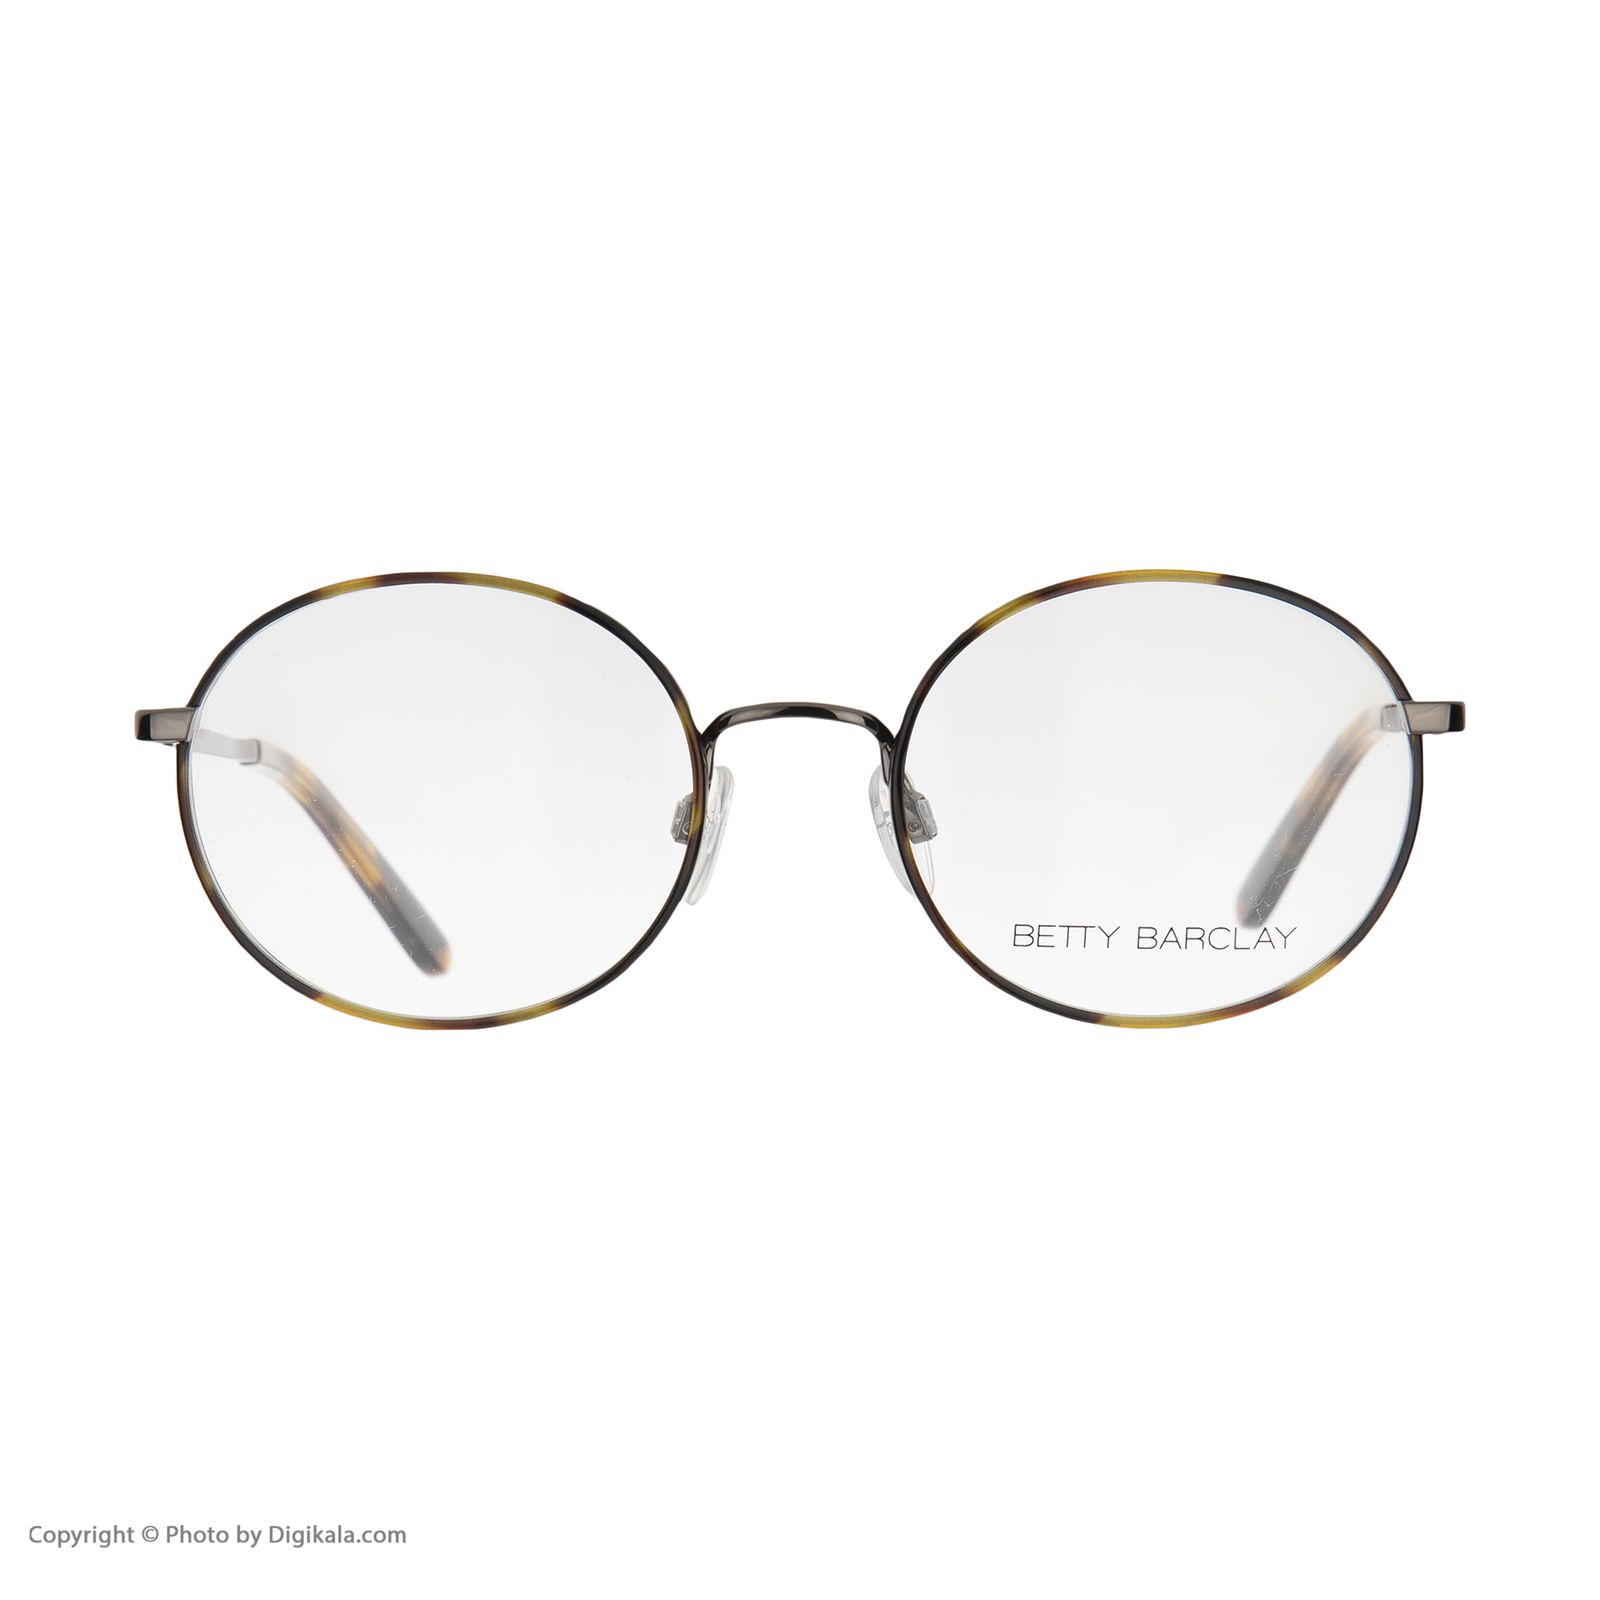 فریم عینک طبی زنانه بتی بارکلی مدل 51168-662 -  - 2